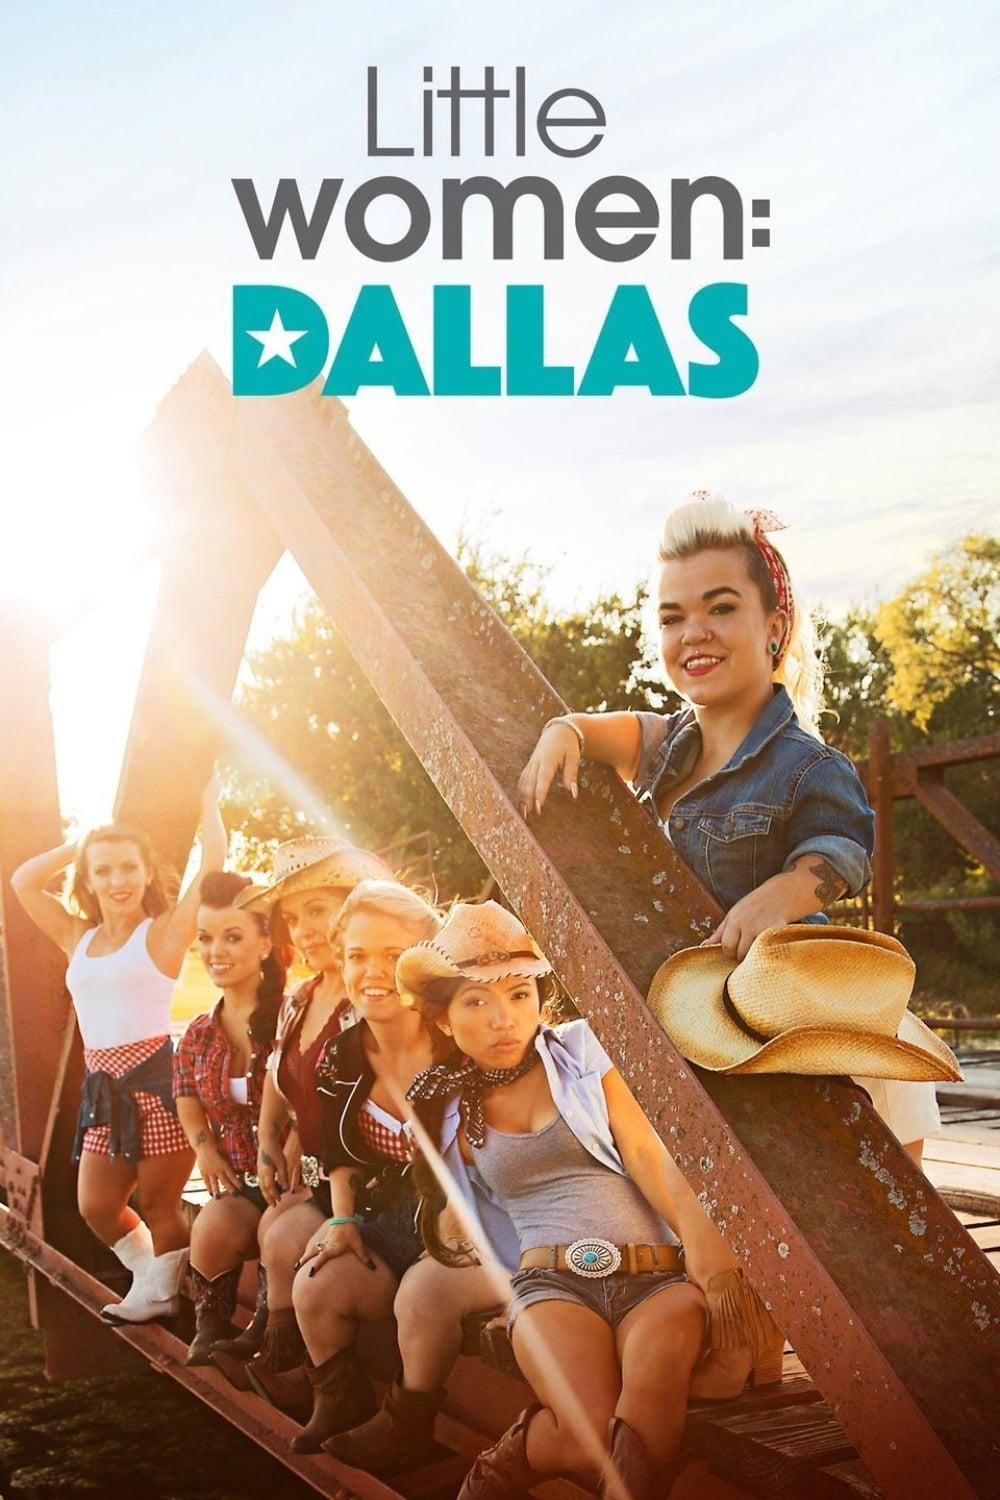 Little Women: Dallas poster